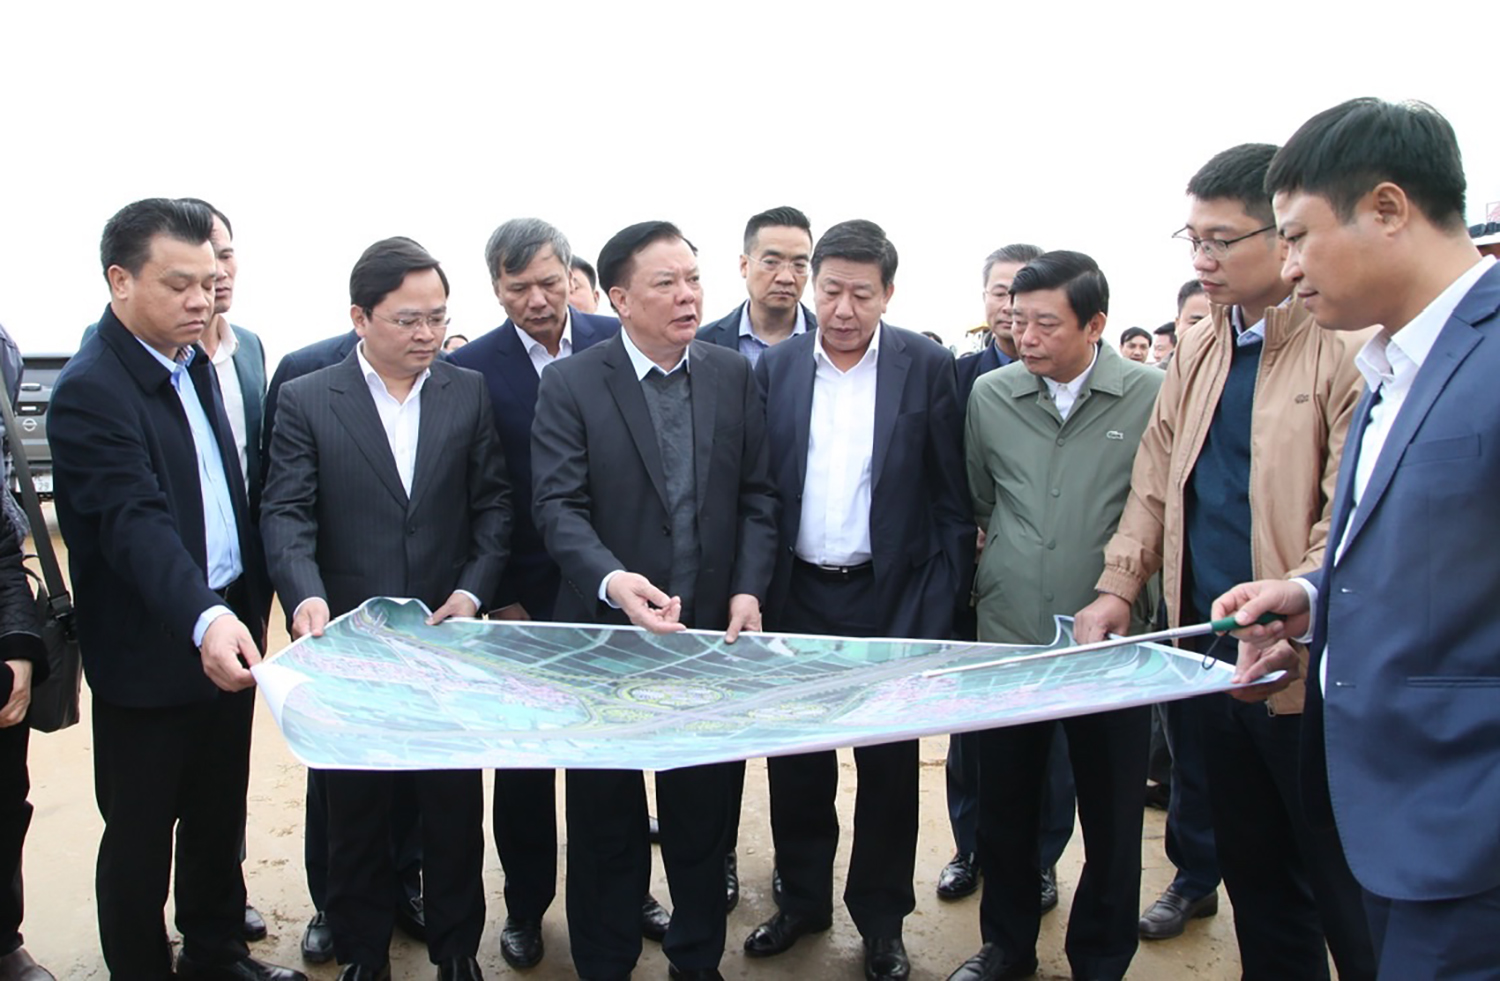 Bí thư Thành ủy Hà Nội Đinh Tiến Dũng nói về định hướng lớn phát triển thủ đô